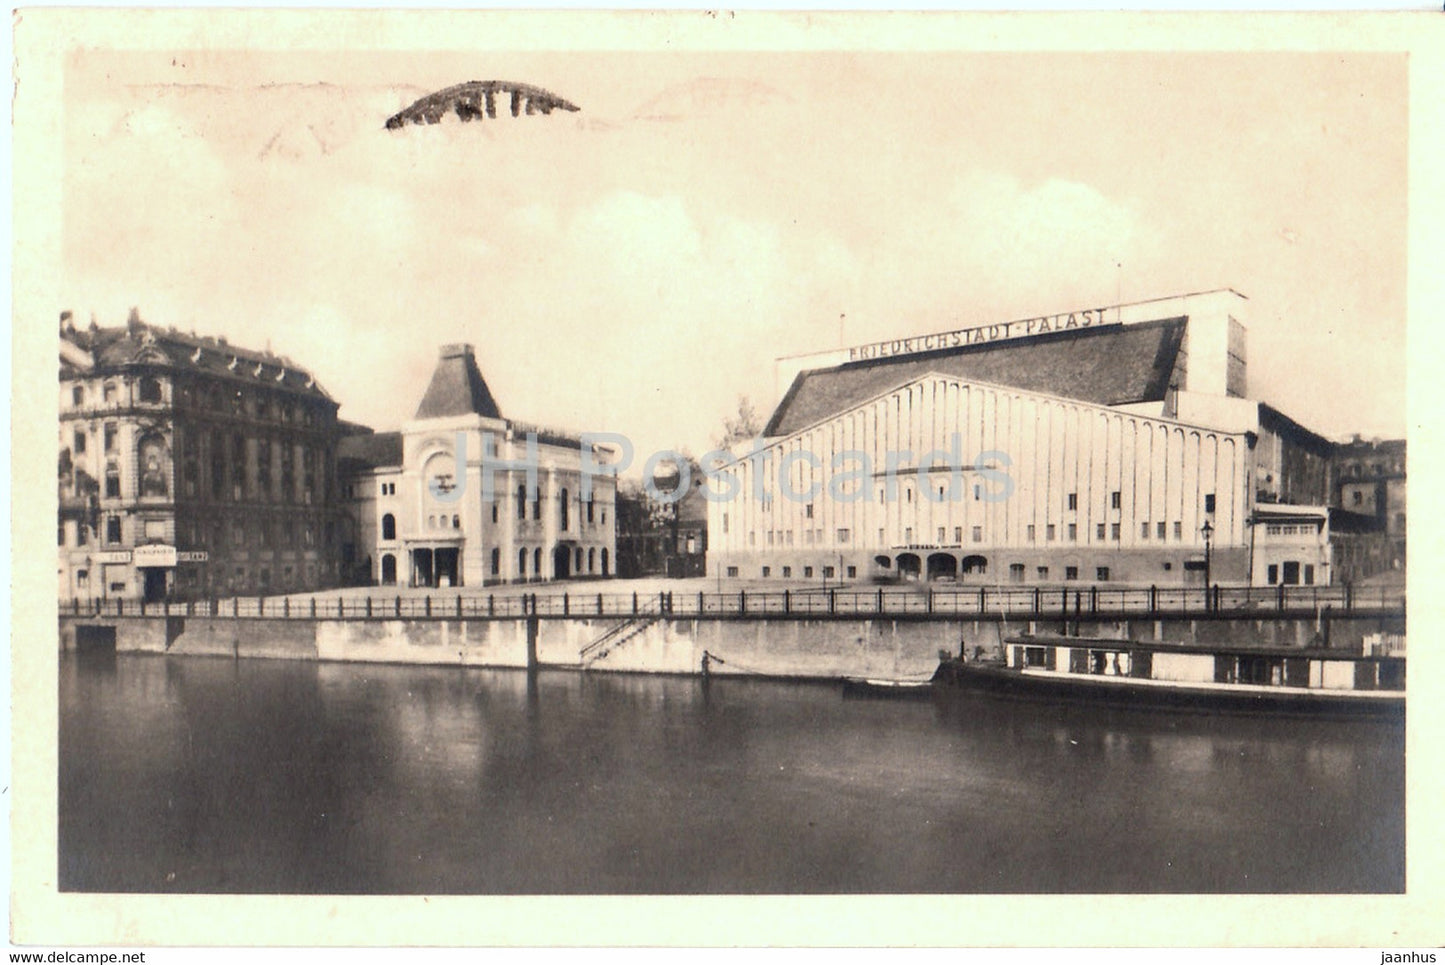 Berlin - Blick uber die Spree - old postcard - 1951 - Germany DDR - used - JH Postcards